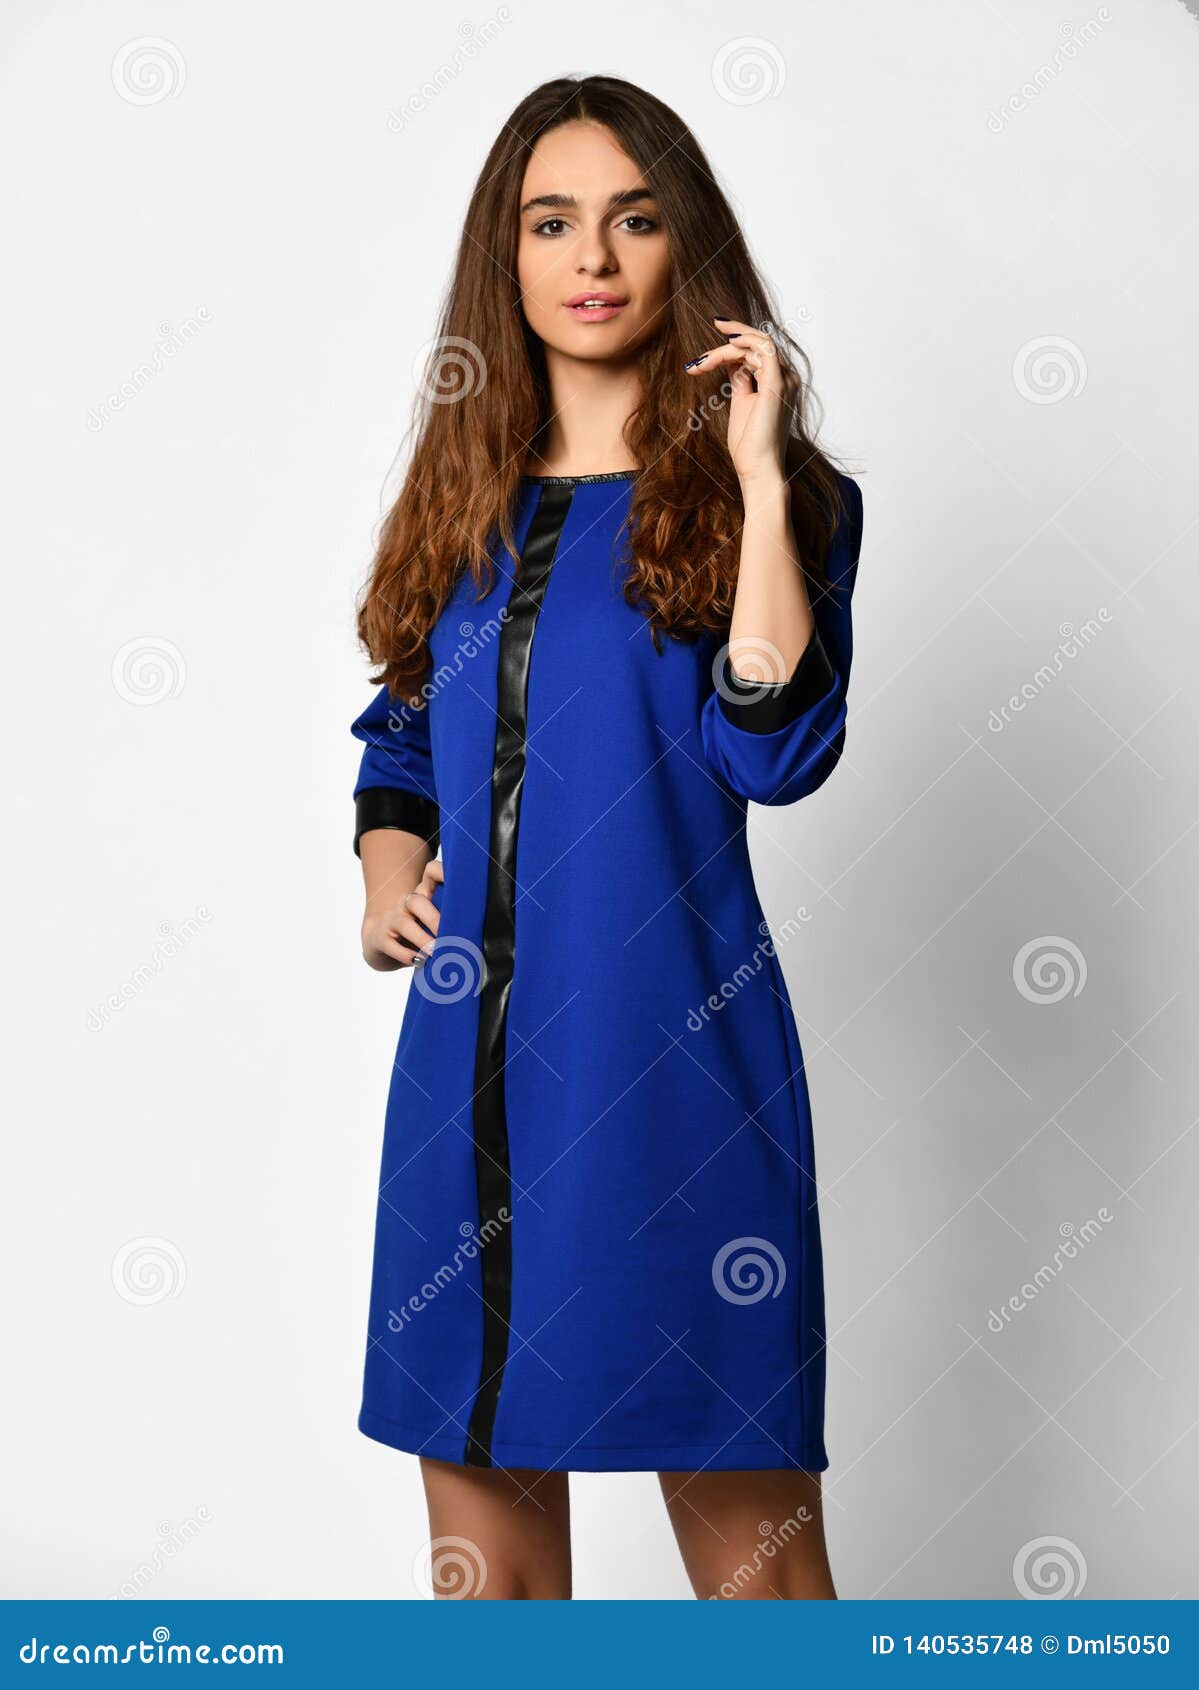 Mujer Hermosa Joven Que Presenta En Vestido Azul Invierno De La Oficina De La Nueva Moda En Un Blanco Foto de archivo Imagen de sonrisa, capa: 140535748